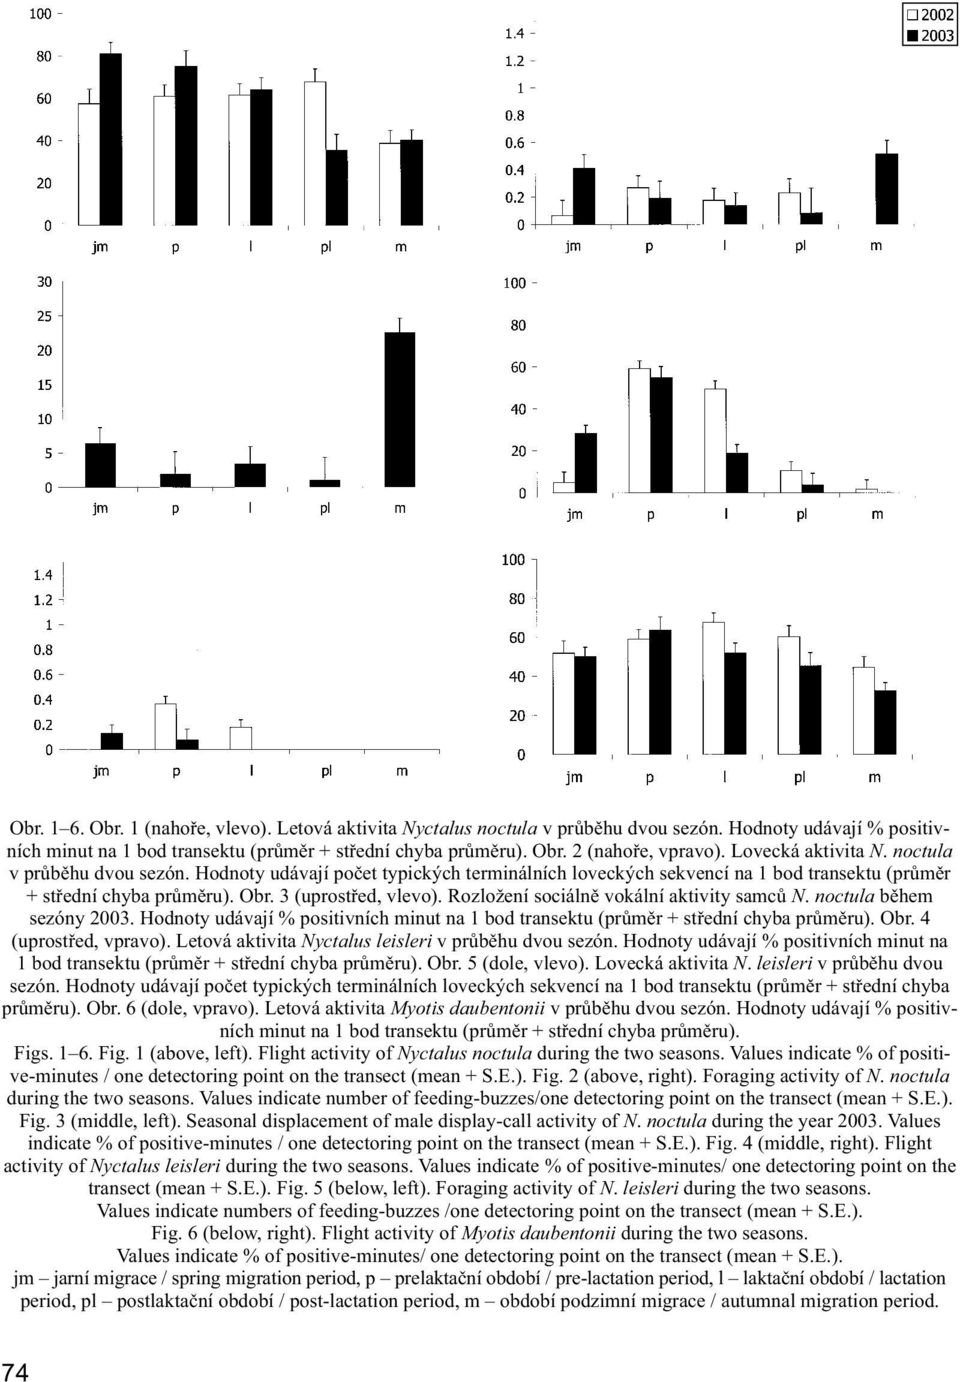 Rozložení sociálně vokální aktivity samců N. noctula během sezóny 2003. Hodnoty udávají % po si tiv ních minut na 1 bod transektu (průměr + střední chyba průměru). Obr. 4 (uprostřed, vpravo).